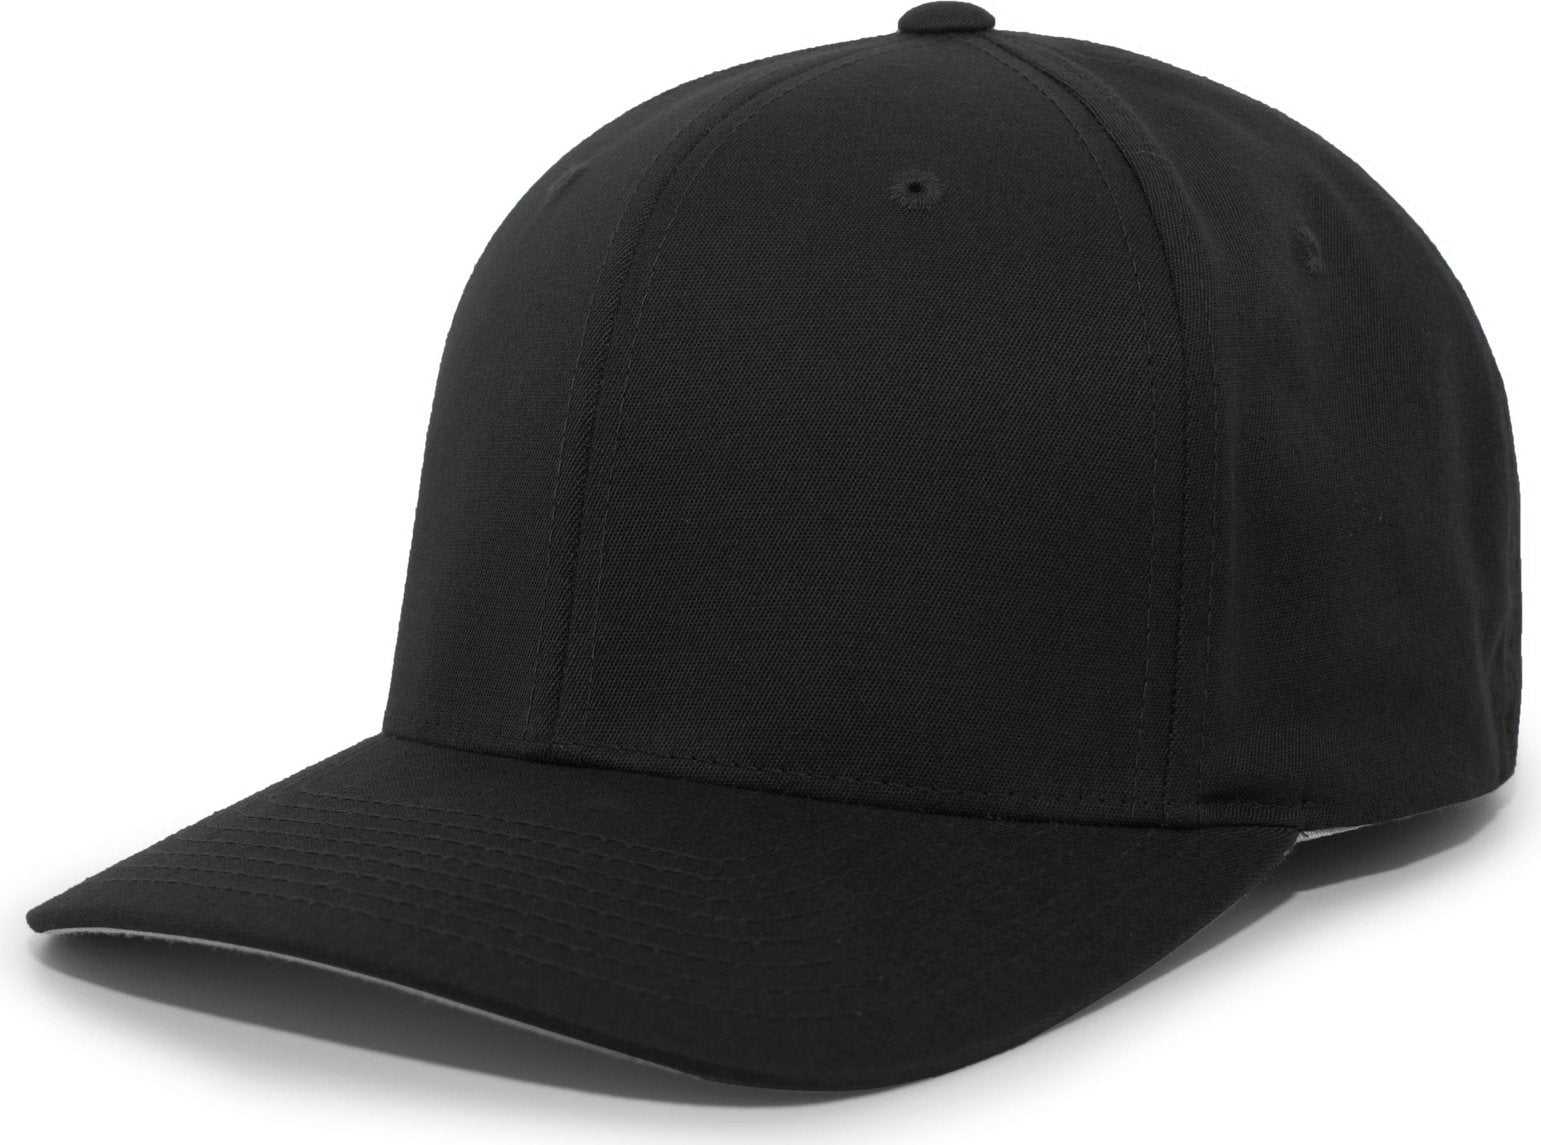 Pacific Headwear 430C Cotton-Poly Flexfit Cap - Black - HIT a Double